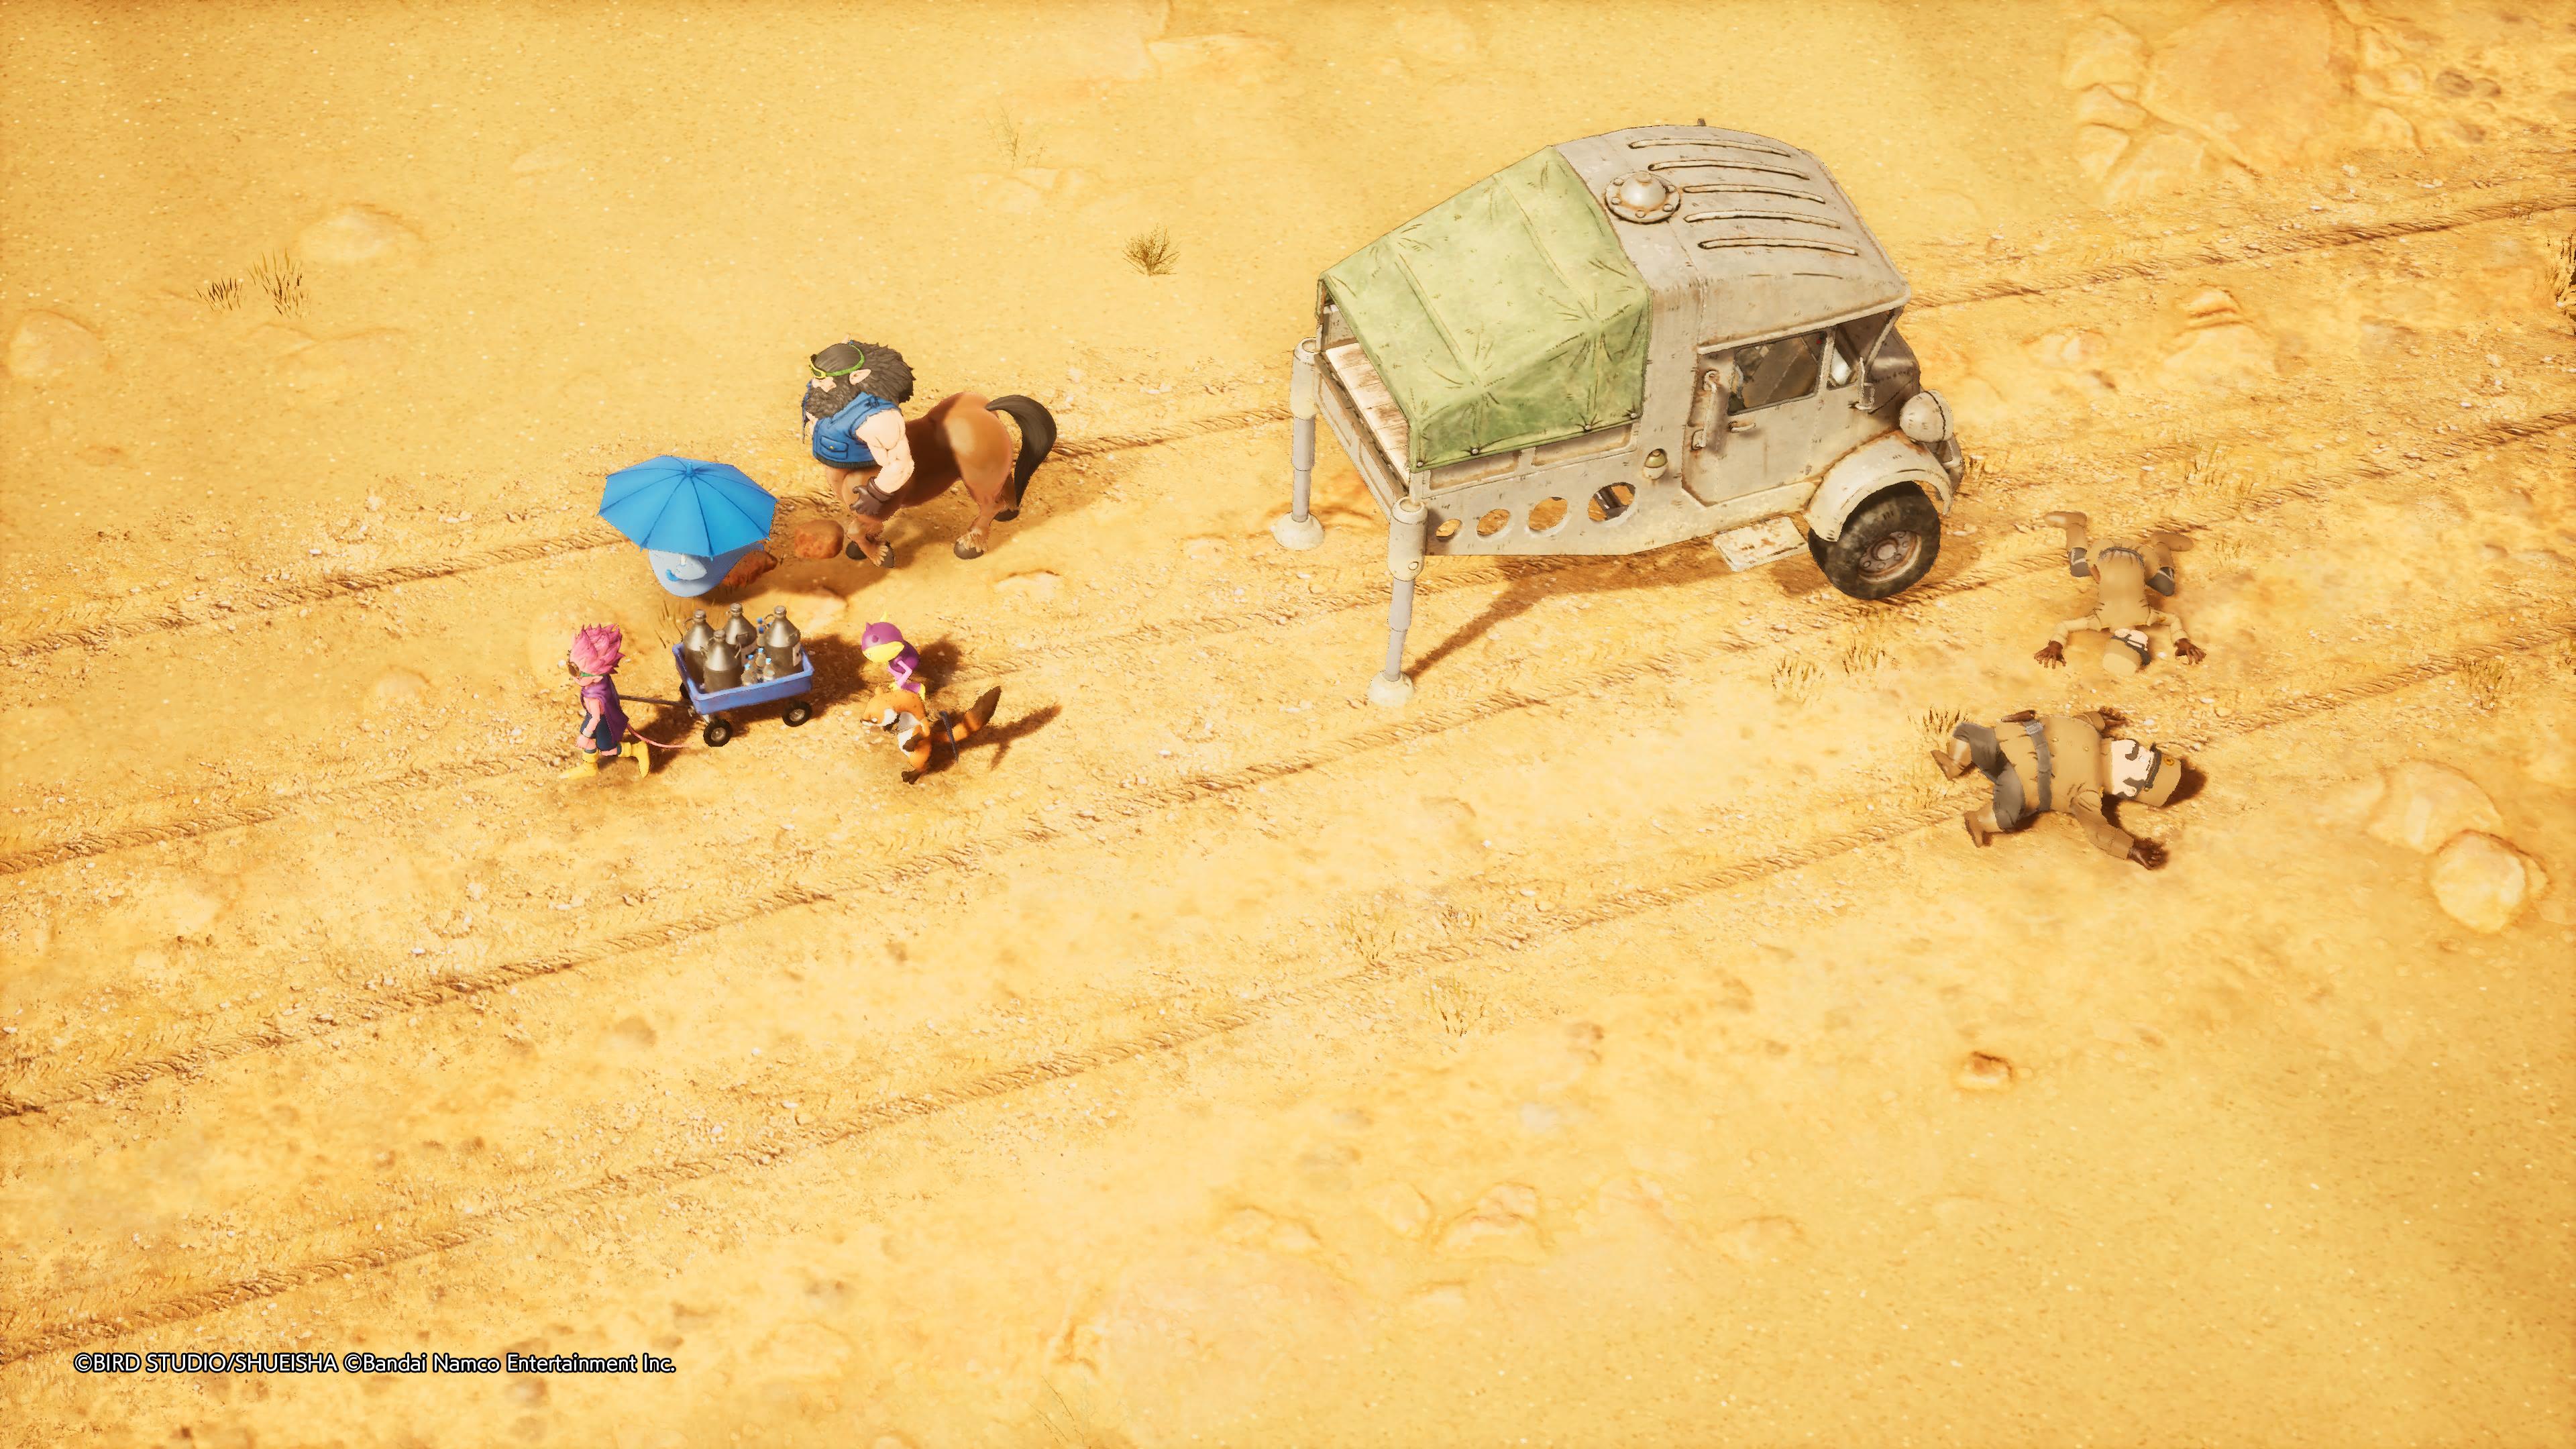 Reseña: Sand Land, una fiel adaptación de la obra de Akira Toriyama 23